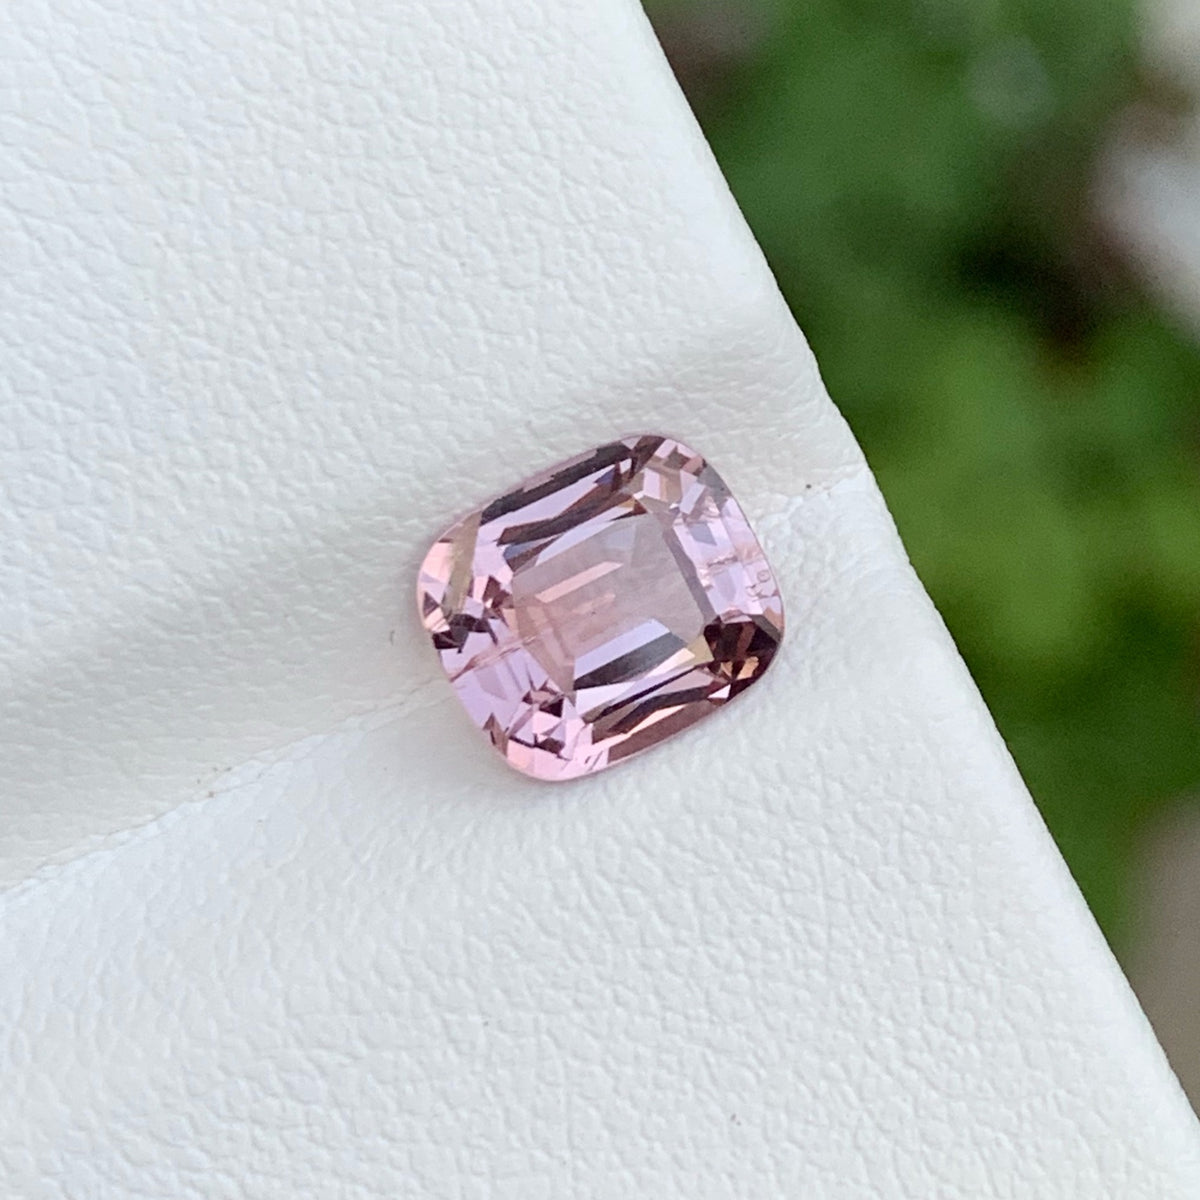 Excellent Bright Pink Cut Spinel Gemstone